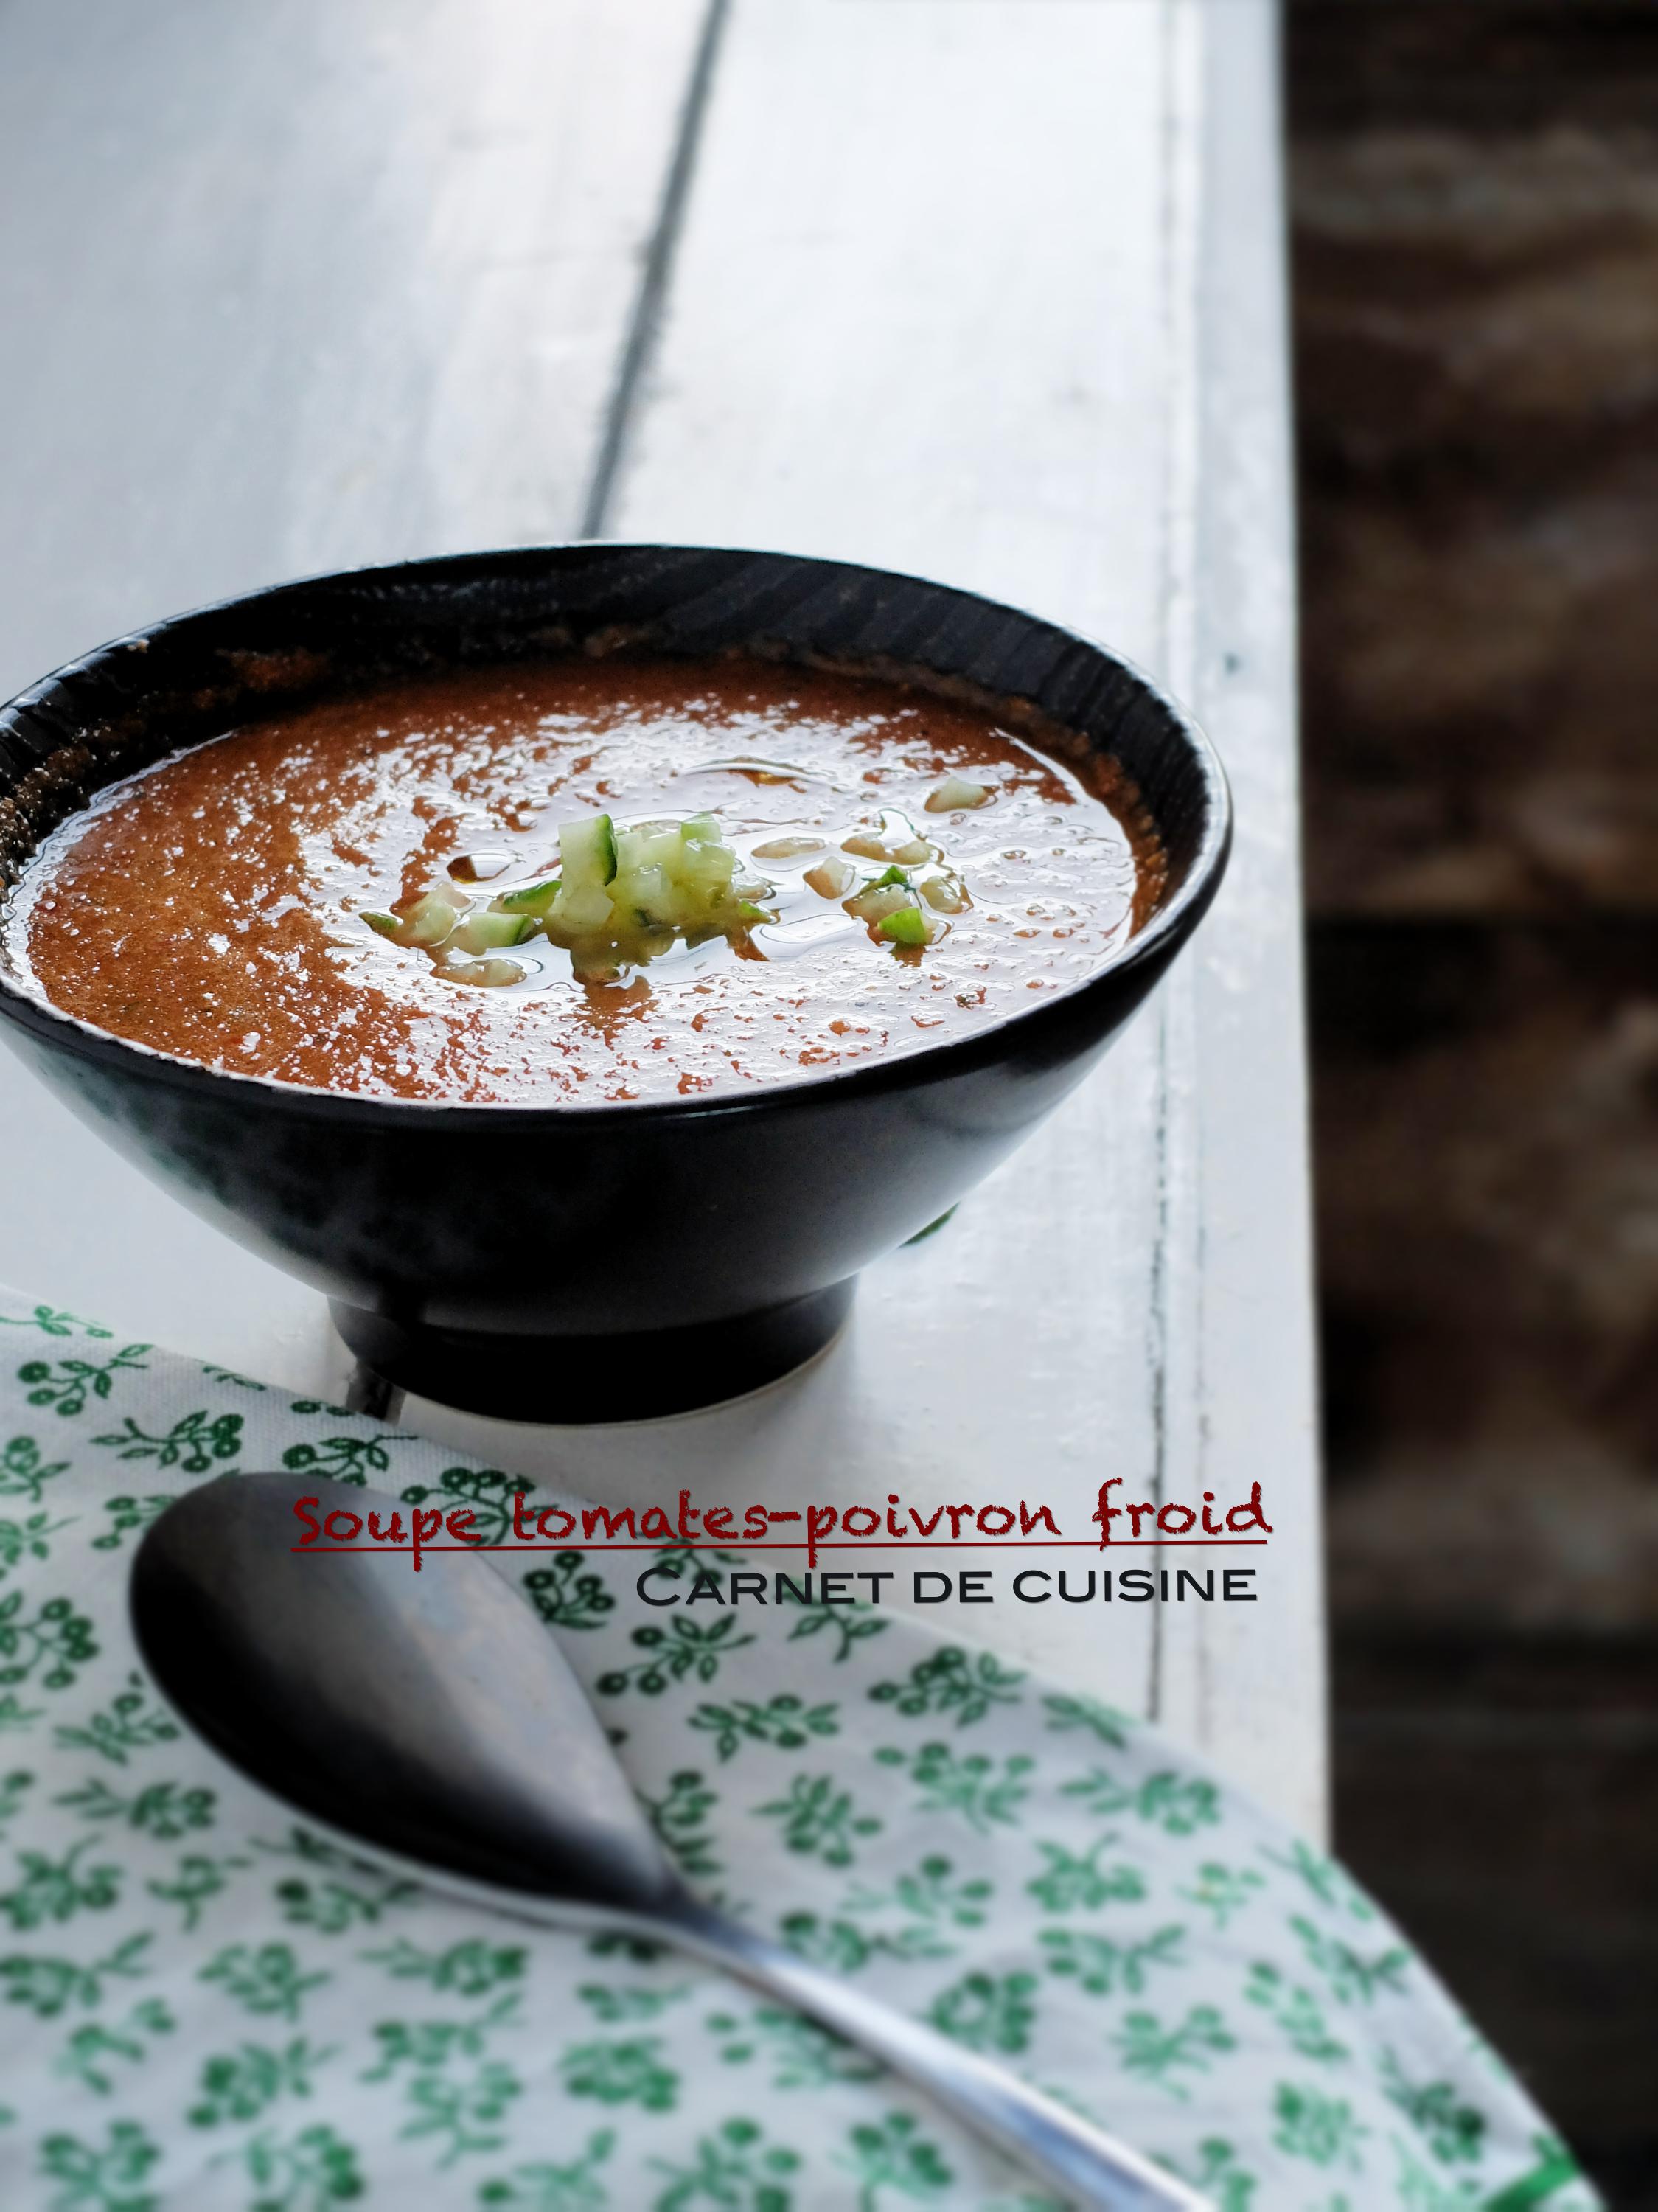 Soup tomates-poivron froid